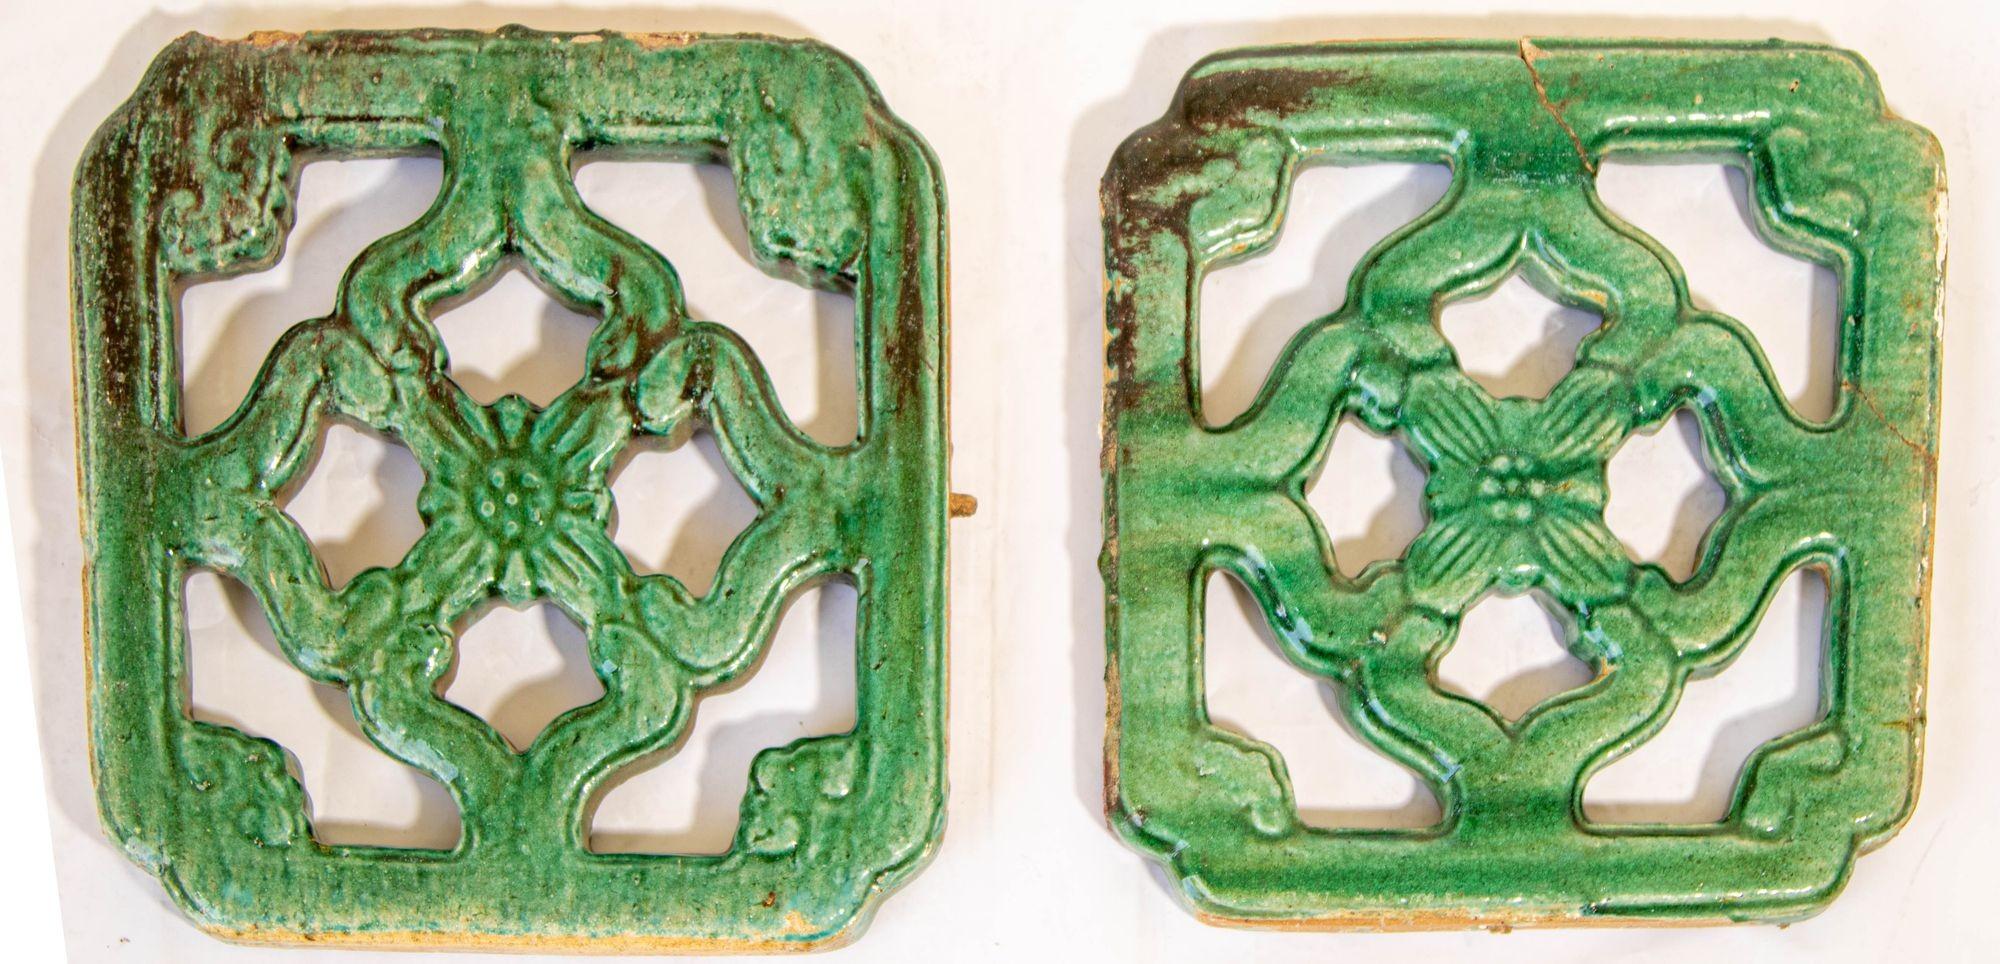 Antike chinesische smaragdgrüne glasierte Durchgangsfliese, um 1900, Satz von 2.
Anfang des 20. Jahrhunderts Chinesische Jade, smaragdgrüne keramische Gartenfliesen - Satz von 2.
Antike grün glasierte schwere Keramikfliesen, durchbrochene Dekoration